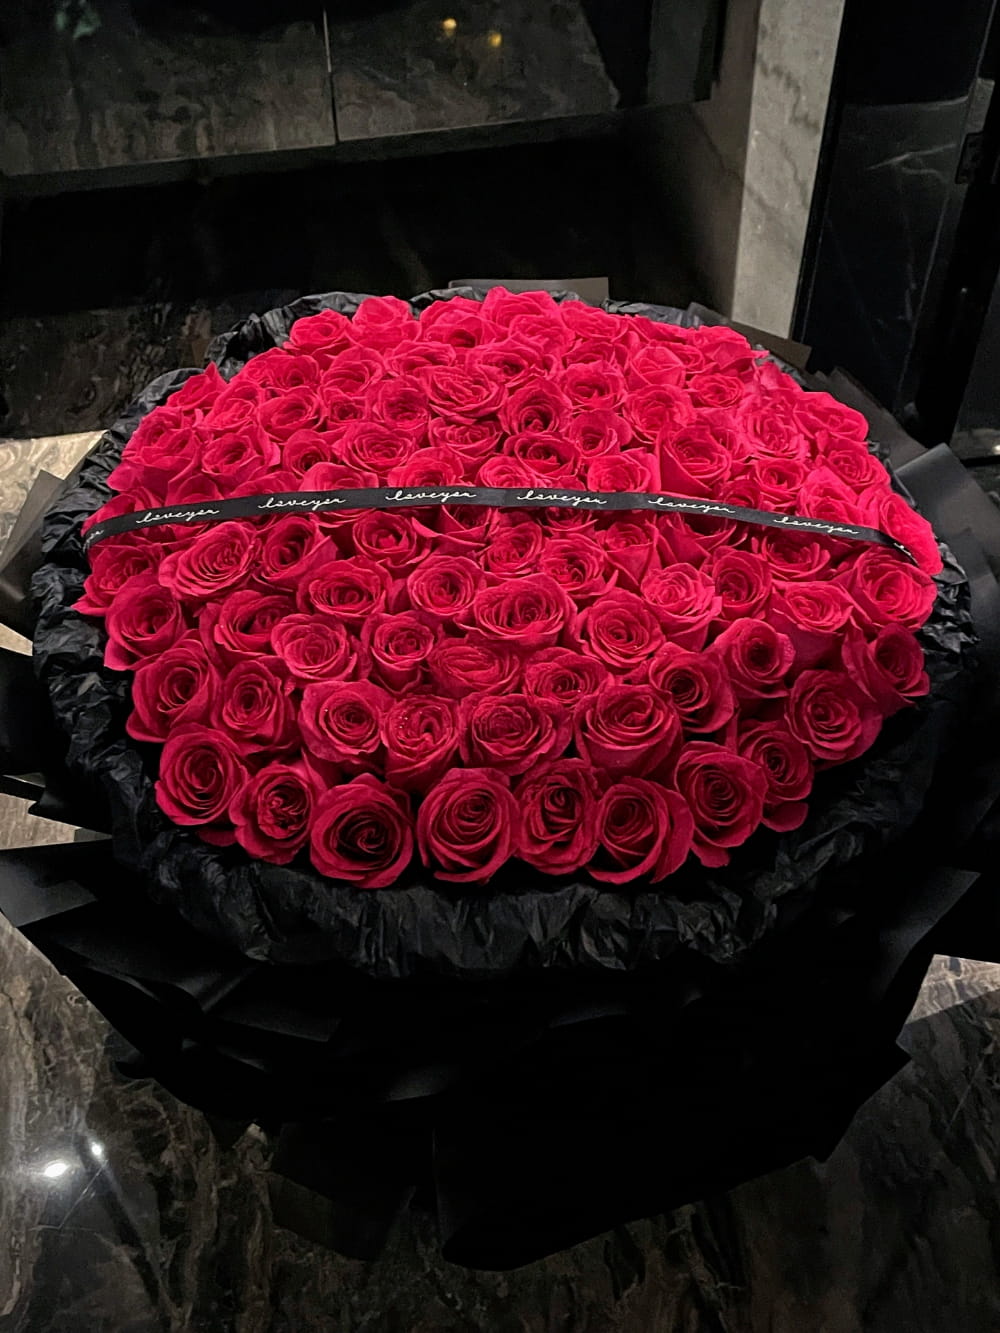 99朵玫瑰花图片,最美玫瑰花图片分享_2